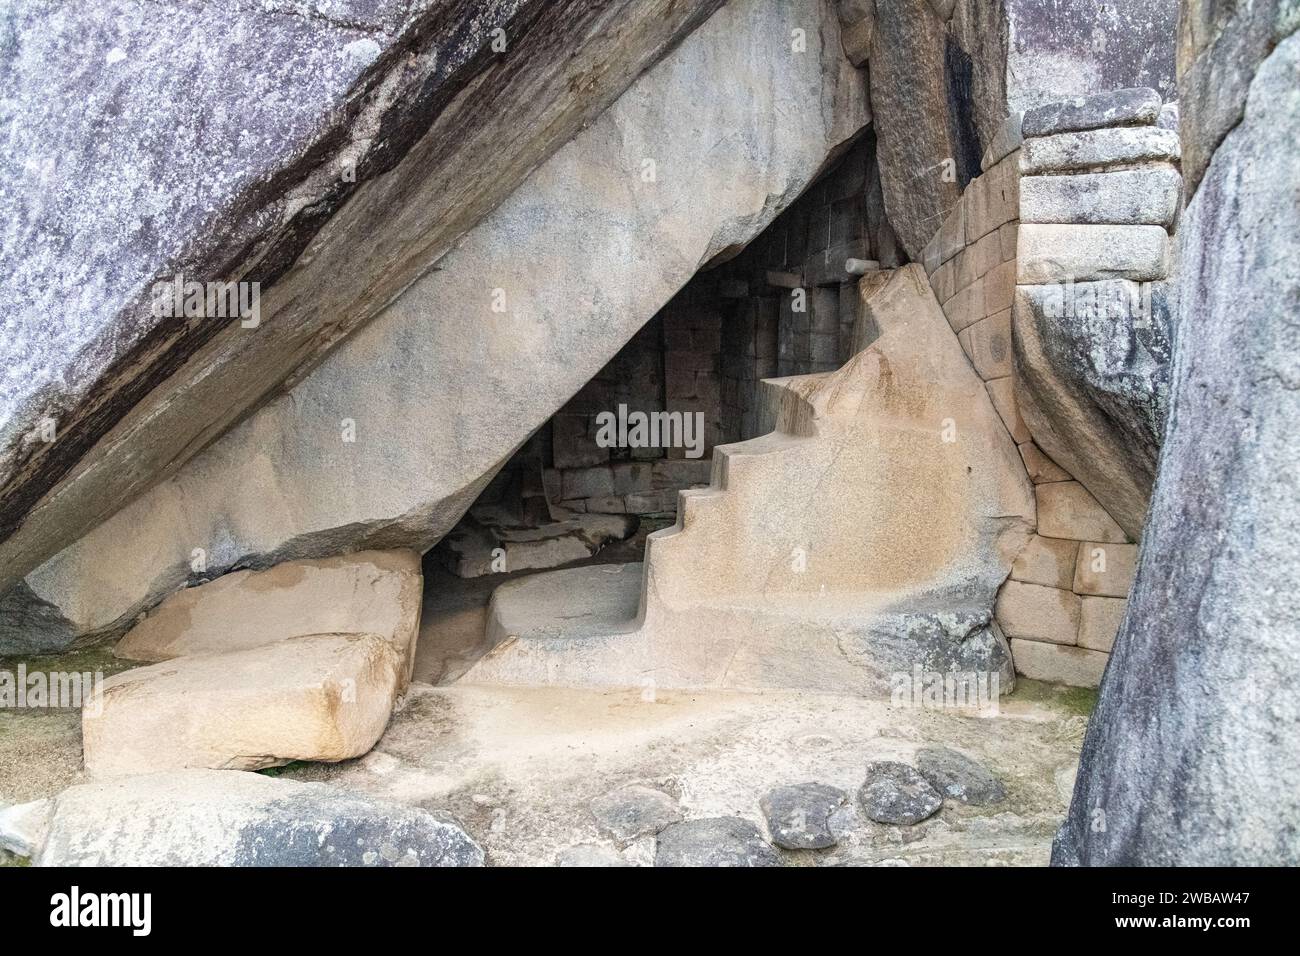 Empty granite stone building structures at Machu Picchu in Peru Stock Photo